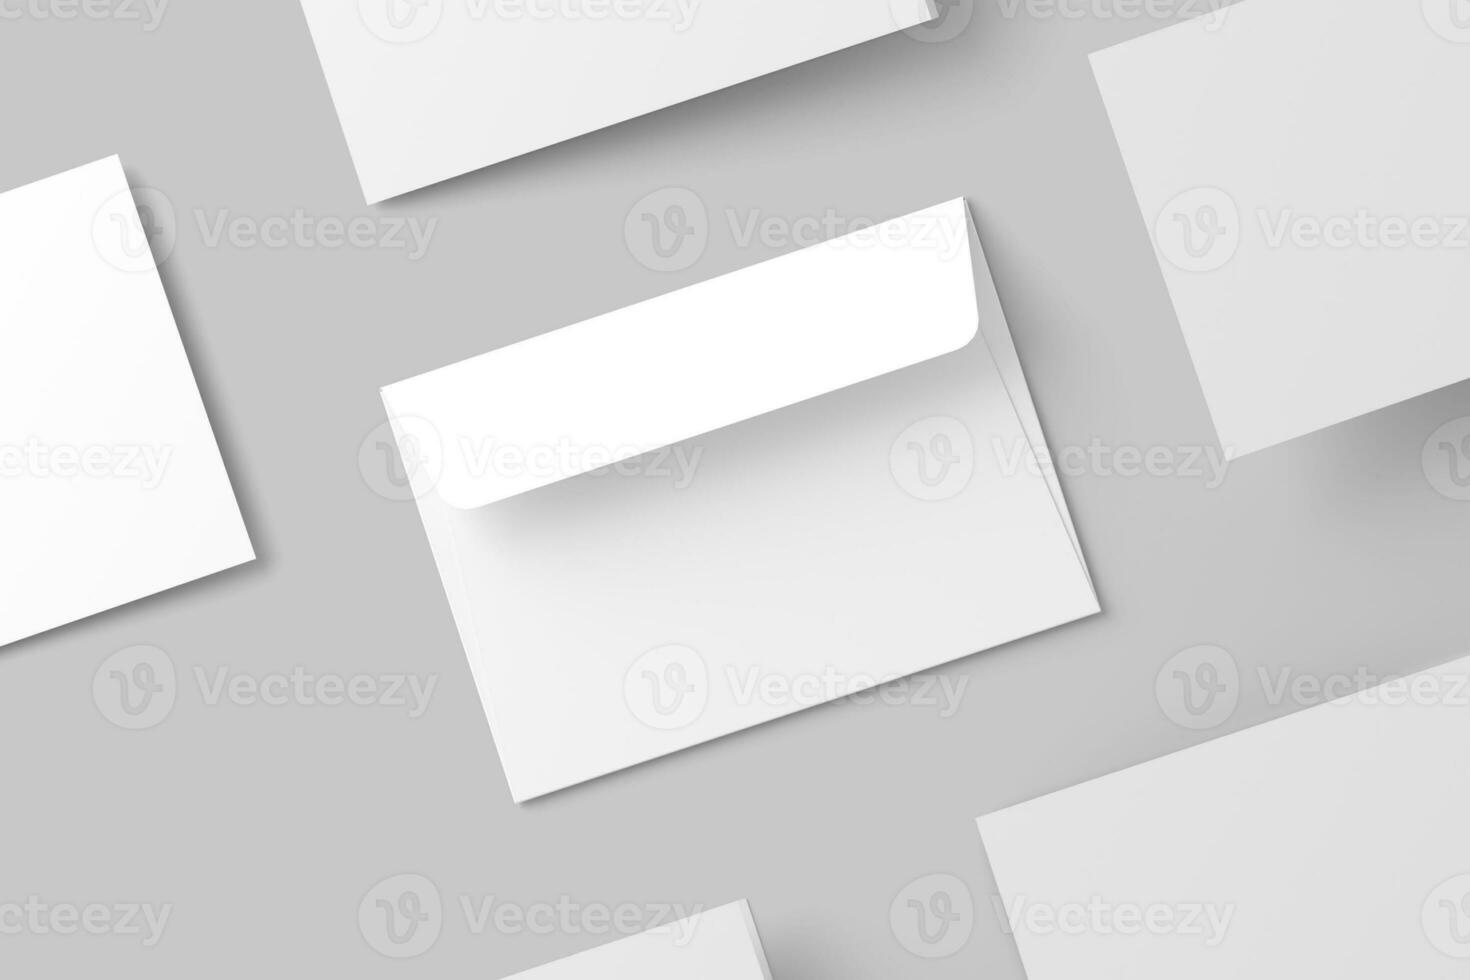 a4 a5 a6 paysage plié invitation carte avec enveloppe 3d le rendu blanc Vide maquette photo